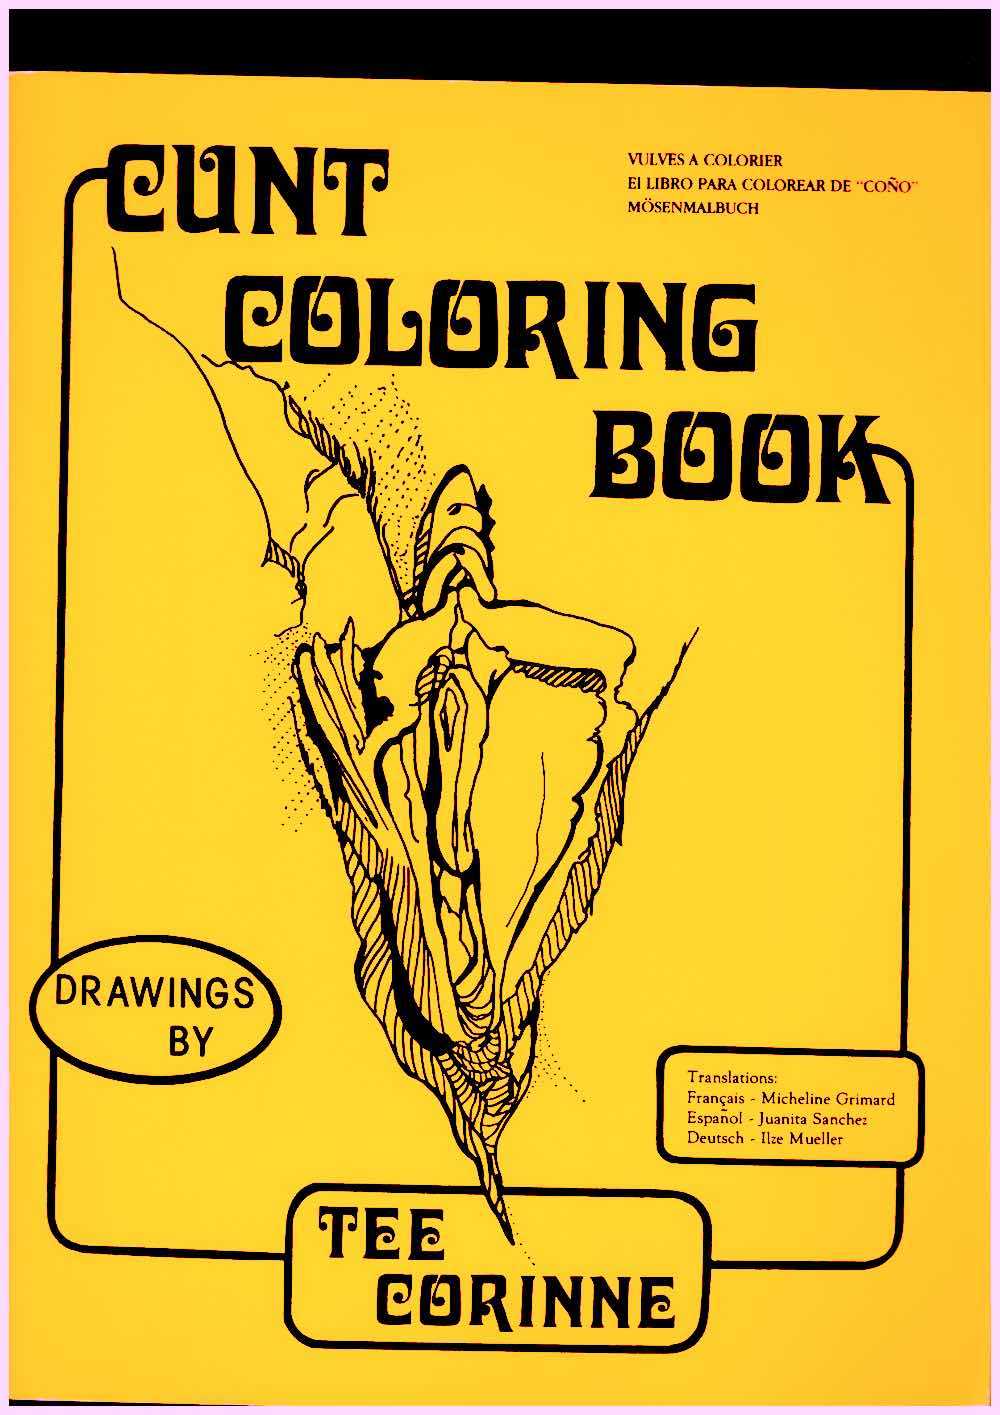 CORINNE, Tee - Cunt Coloring Book / Vulves à colorier / El libro para colorear de “coño” / Mösenmalbuch